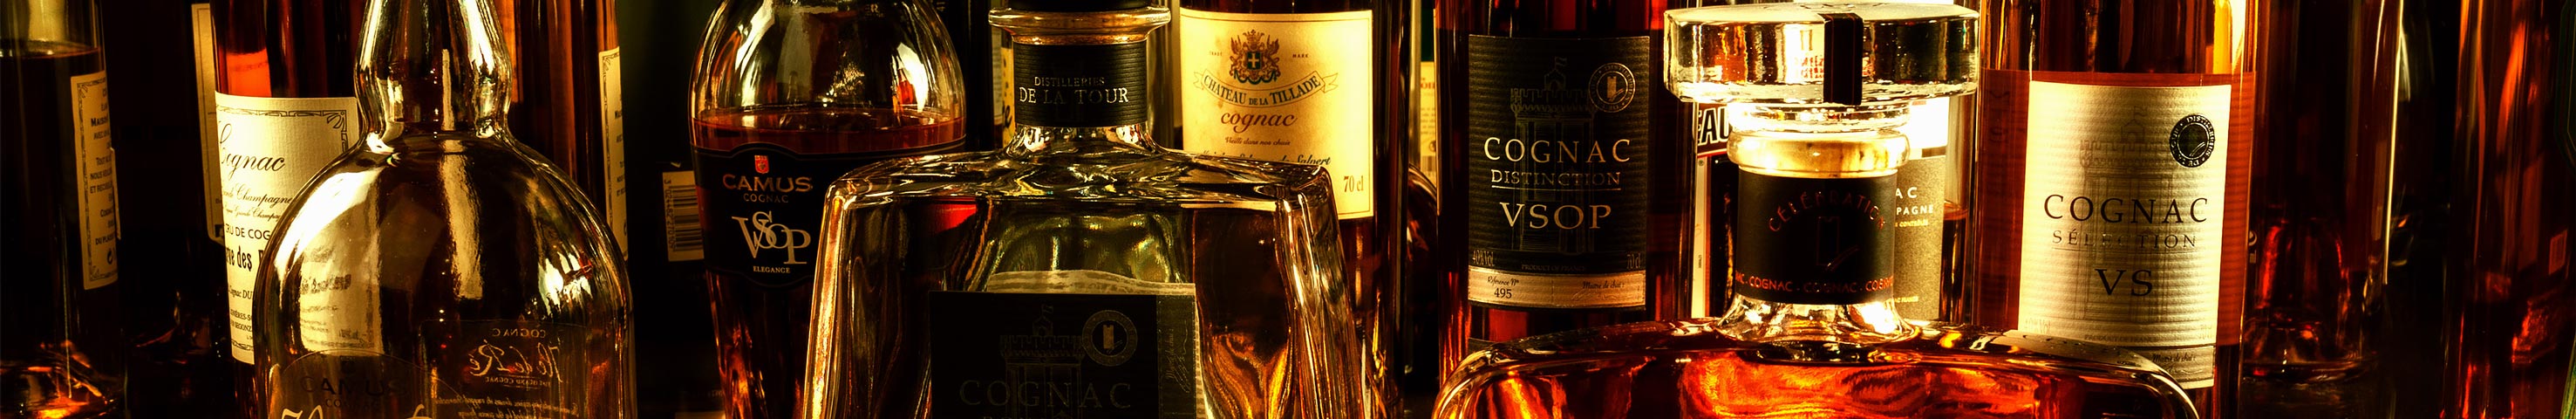 Table de Cognac